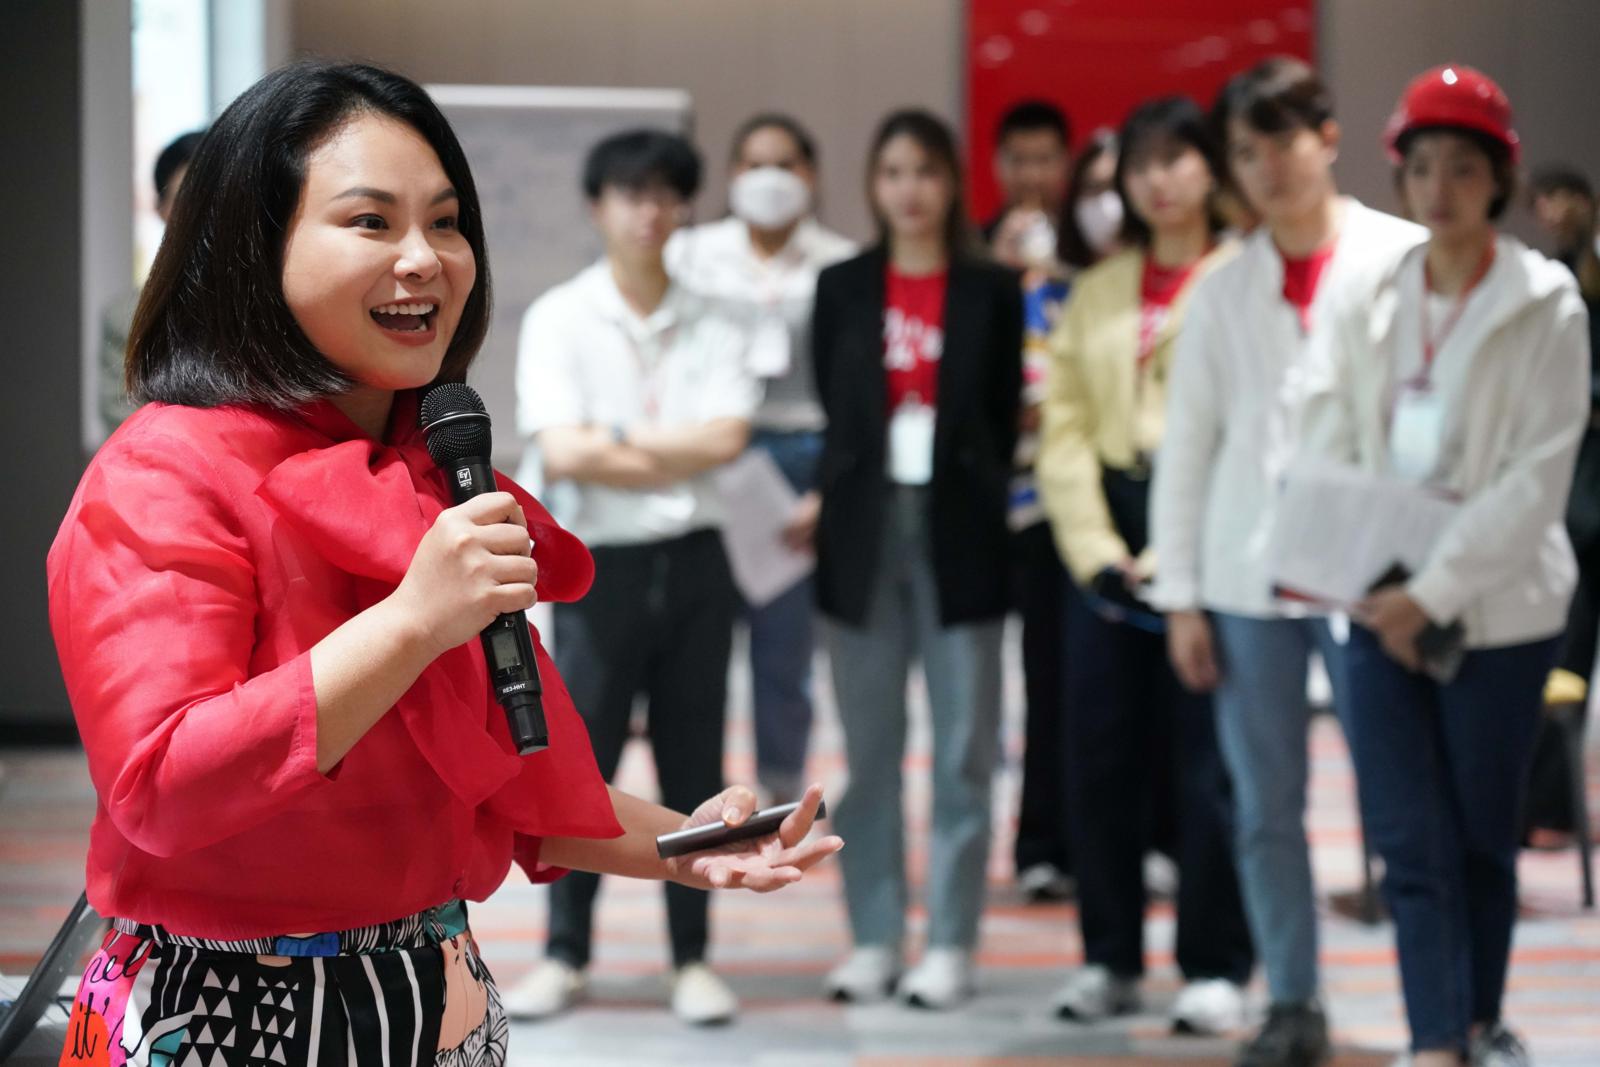 5 บทเรียนสุดสนุกจากการร่วมกิจกรรม “DRILL YOUR PURPOSE BOOTCAMP” เรียนรู้การบริหารจัดการคนสไตล์ AirAsia (แอร์เอเชีย)